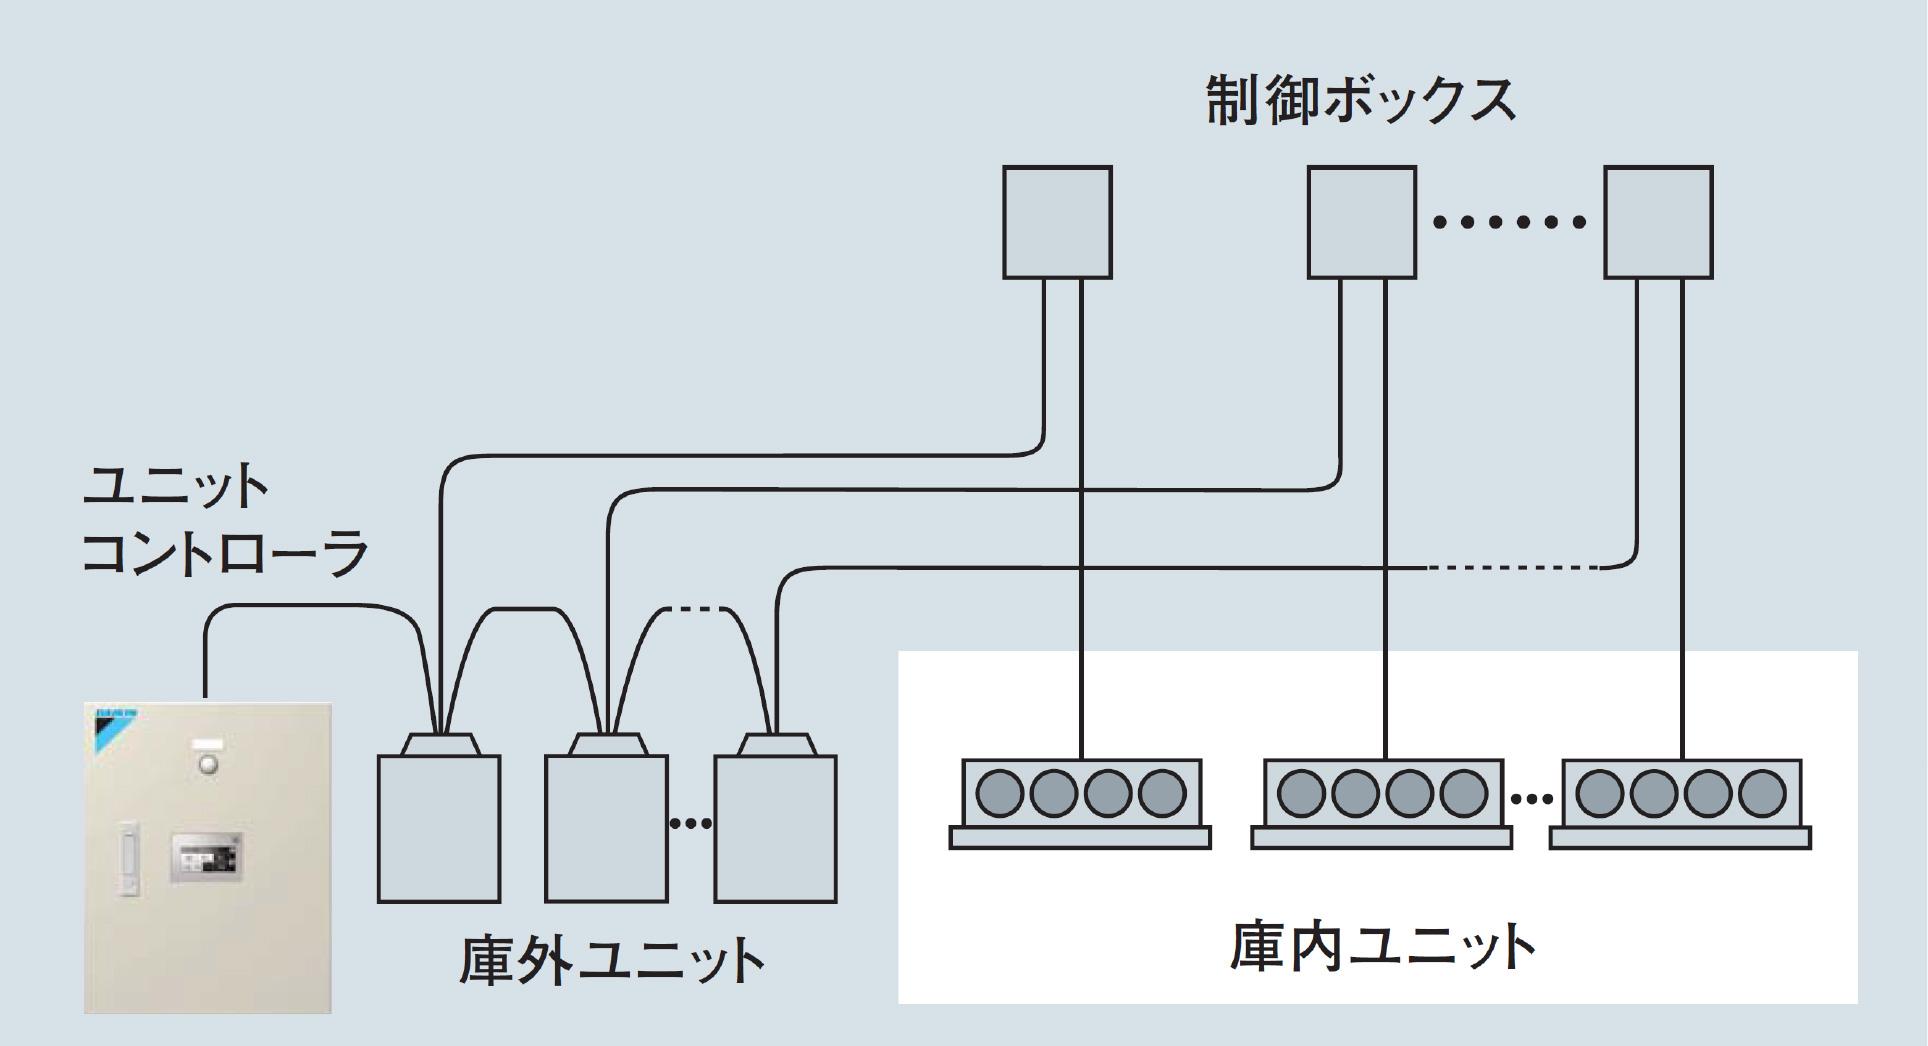 集中管理システム イメージ図